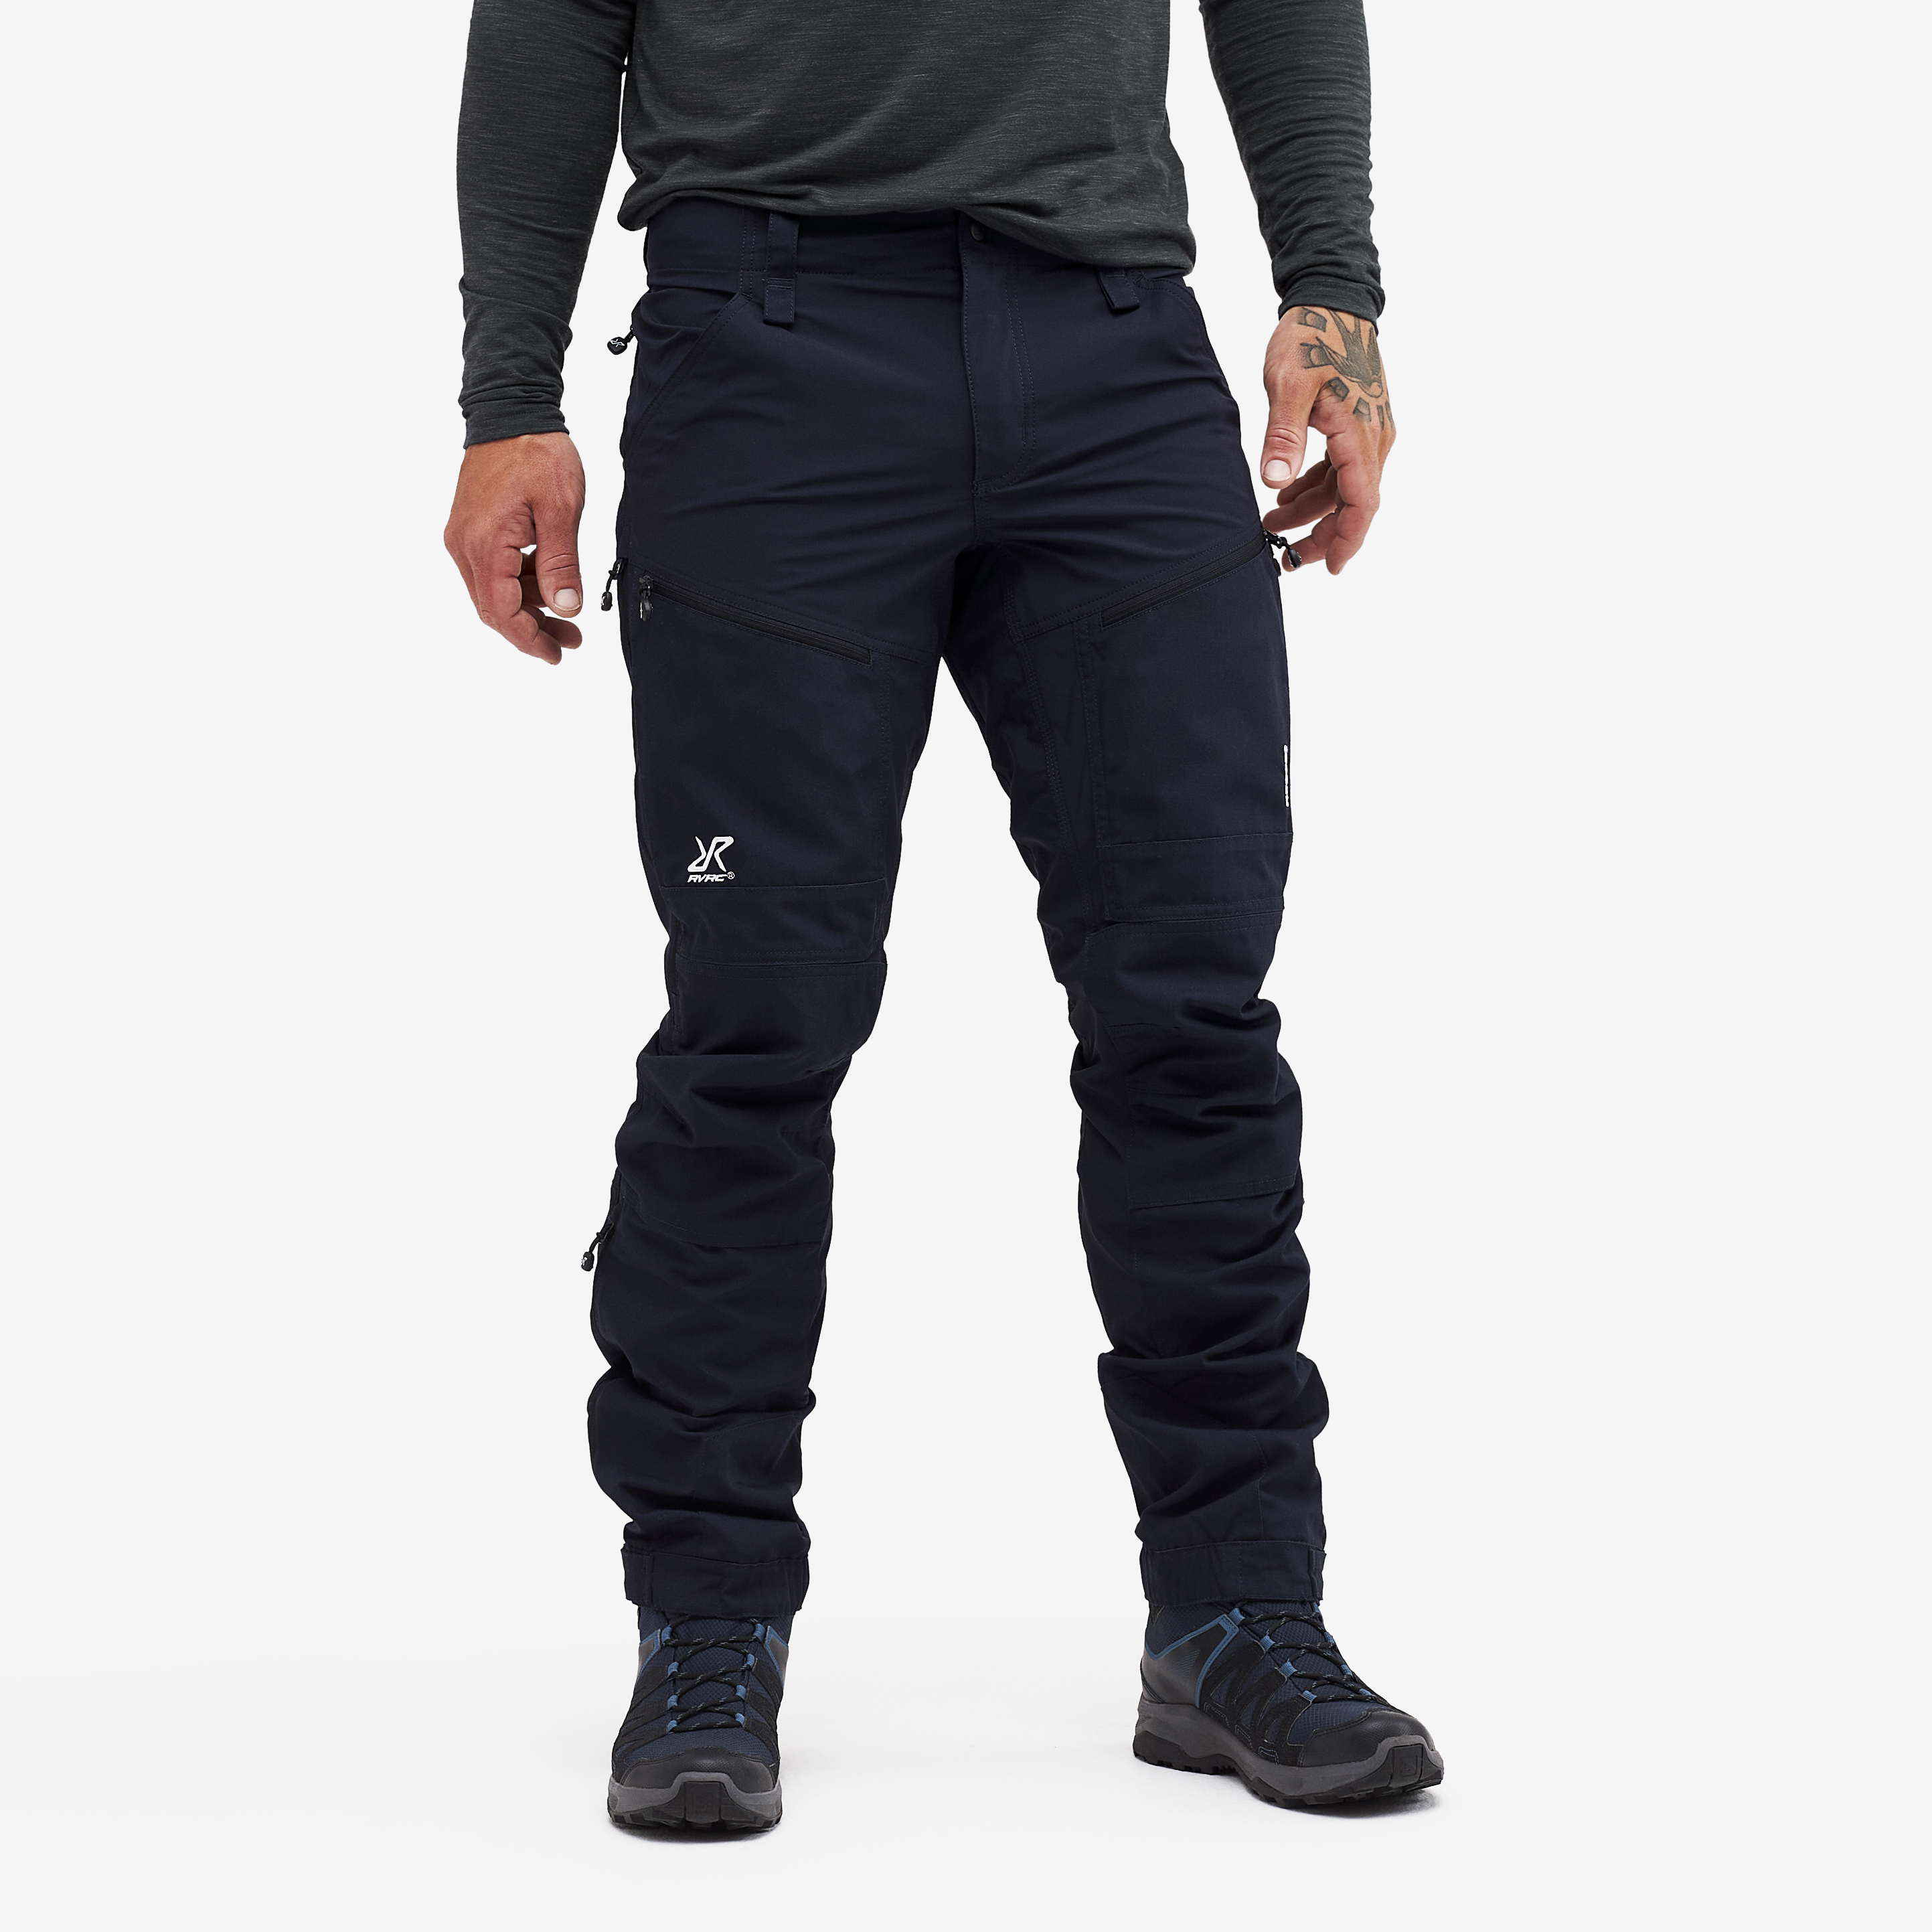 RVRC GP Pro Rescue Trousers Peacemaker Blue 2.0 Men